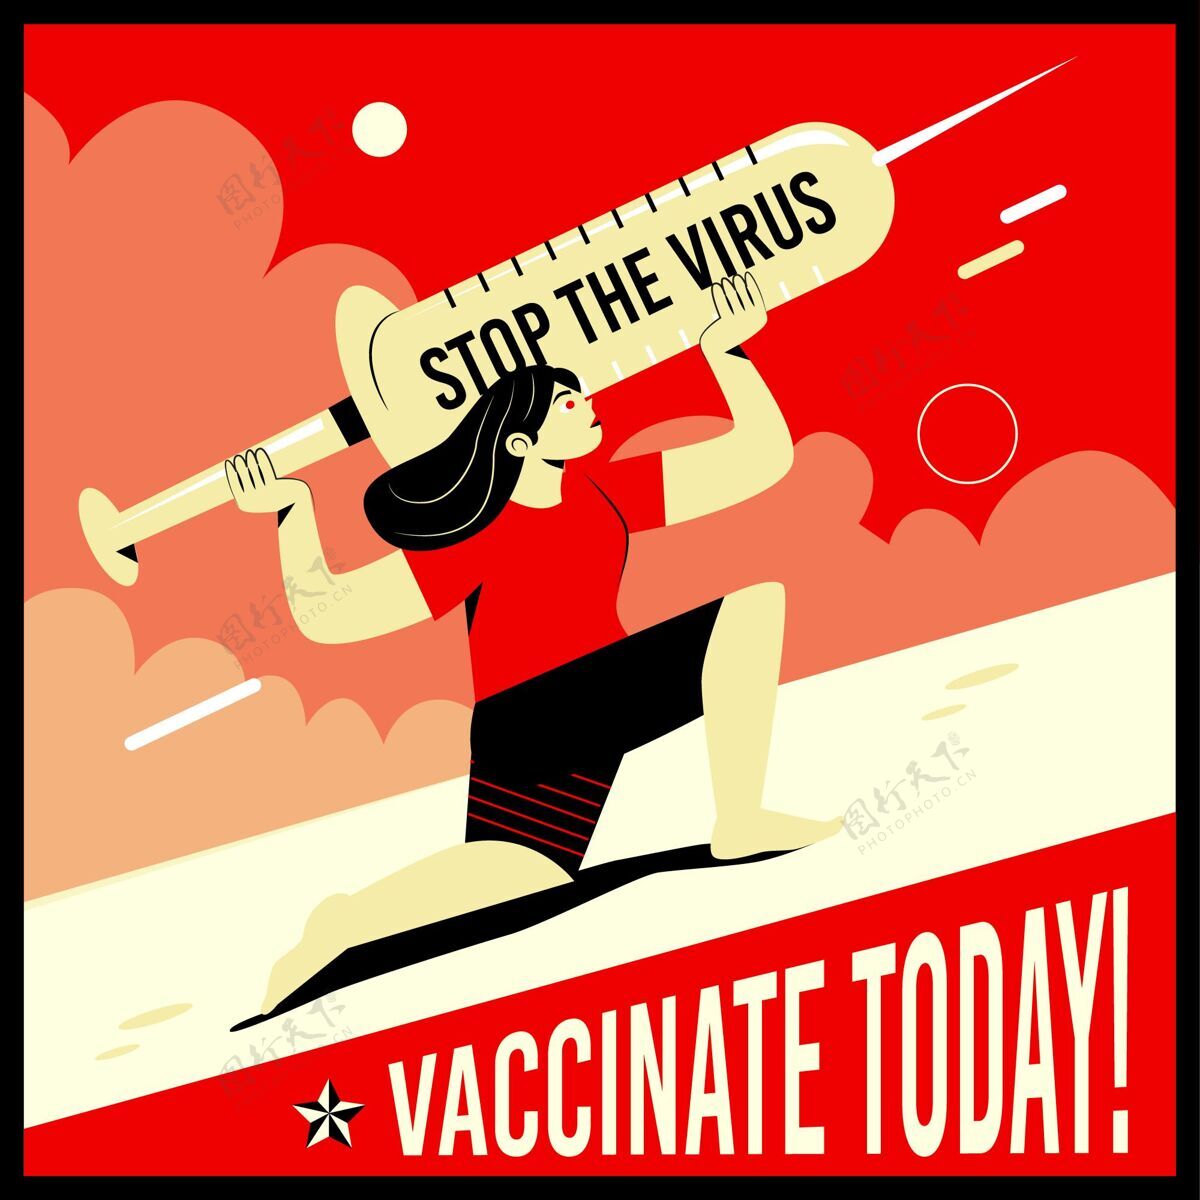 疫苗注射平面疫苗接种活动插图流行病平面设计疫苗